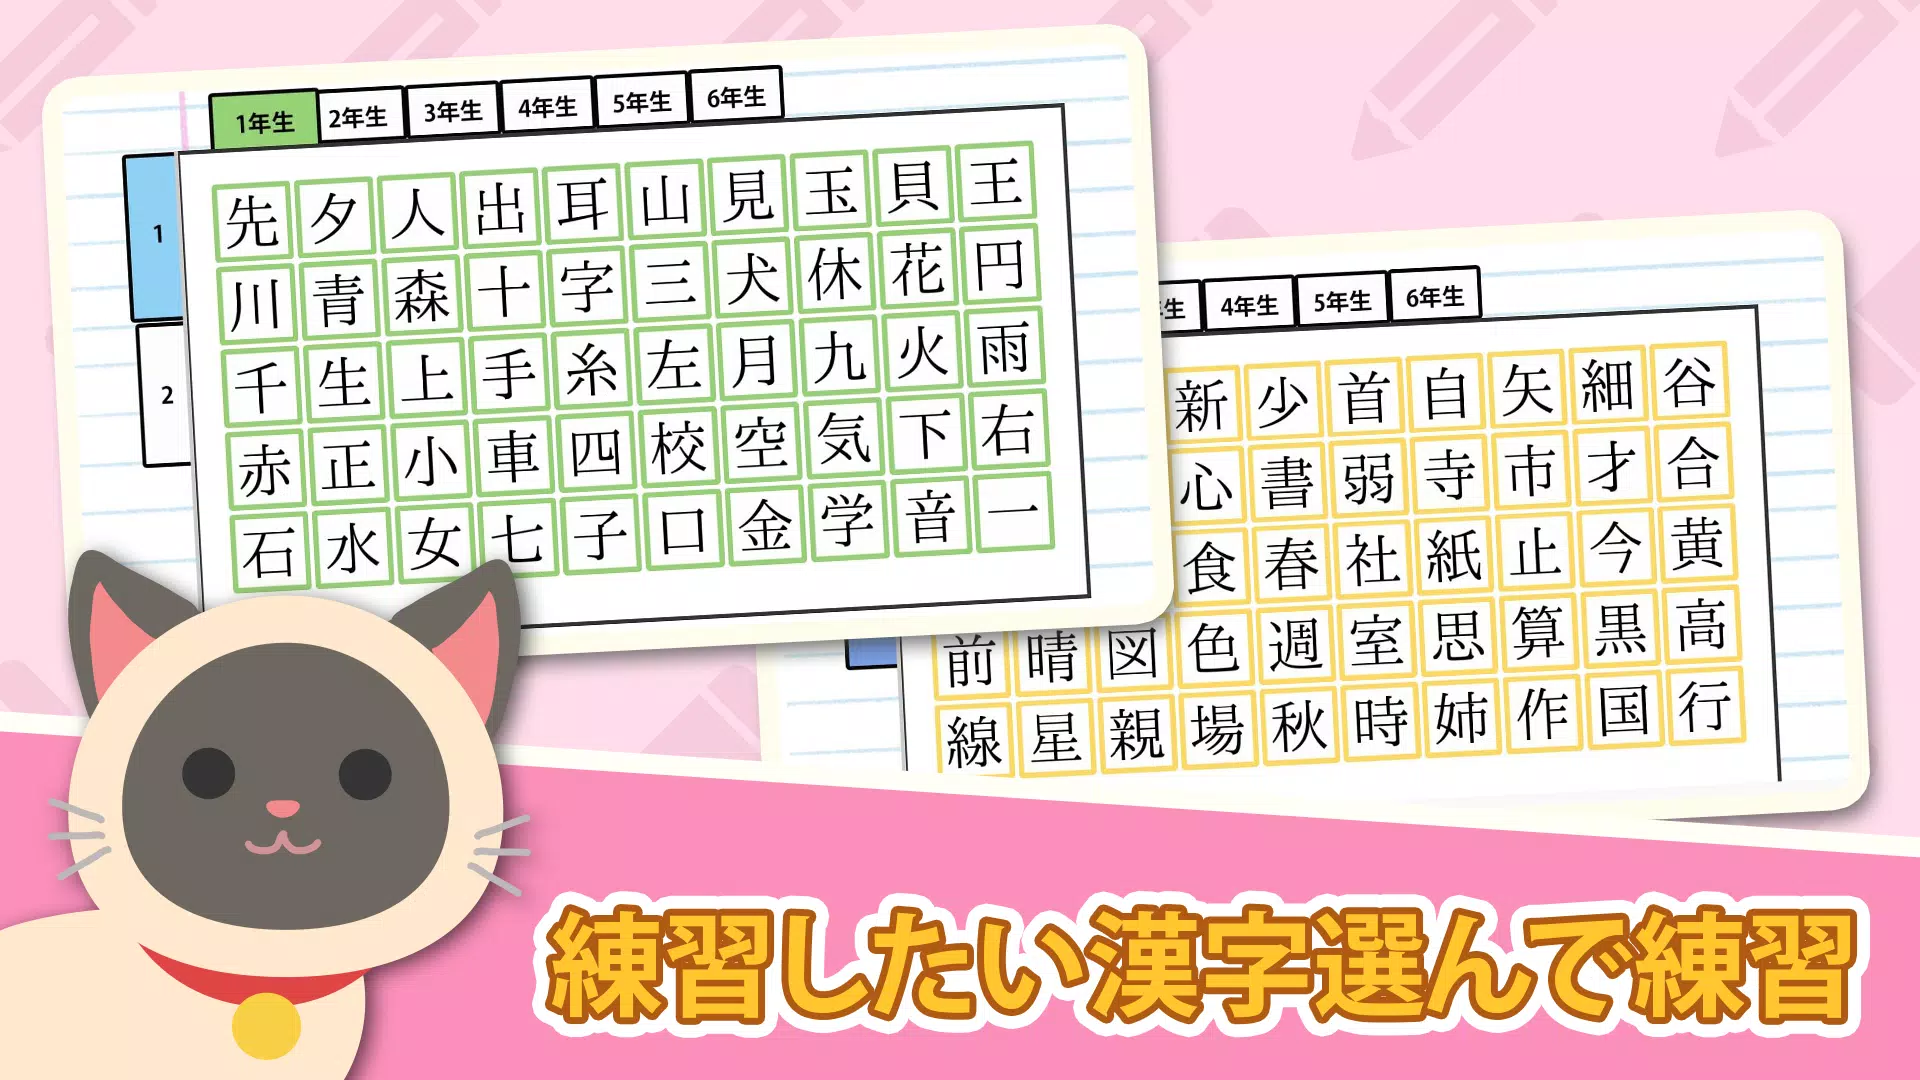 下载漢字の正しい書き順 筆順 アプリ 常用漢字手書き練習学習用アプリ 漢字検定にも便利無料筆順勉強アプリ的安卓版本